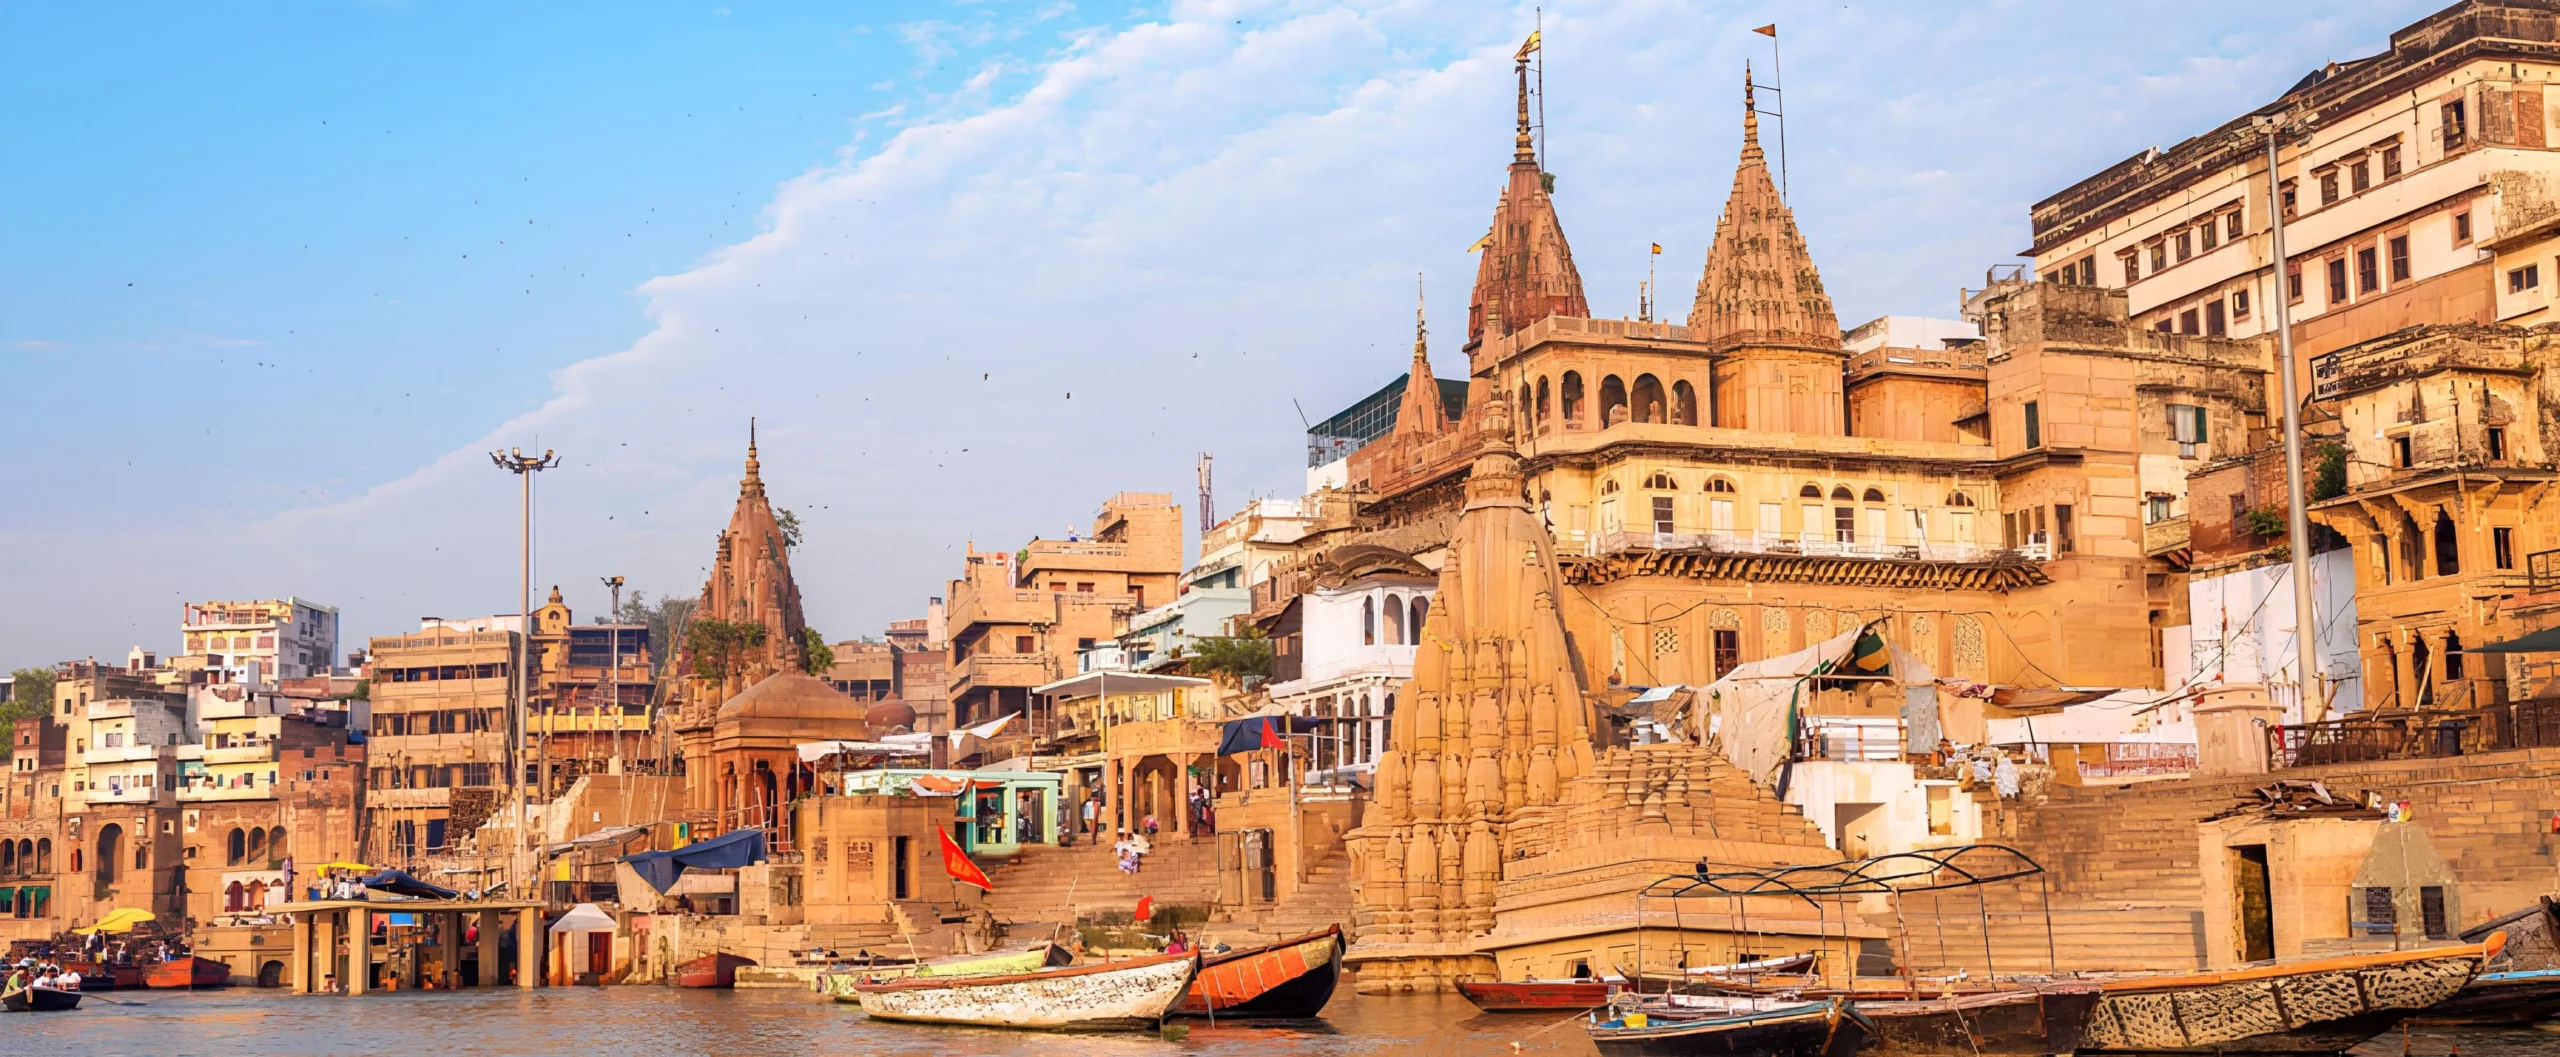 Travel Advice for Varanasi